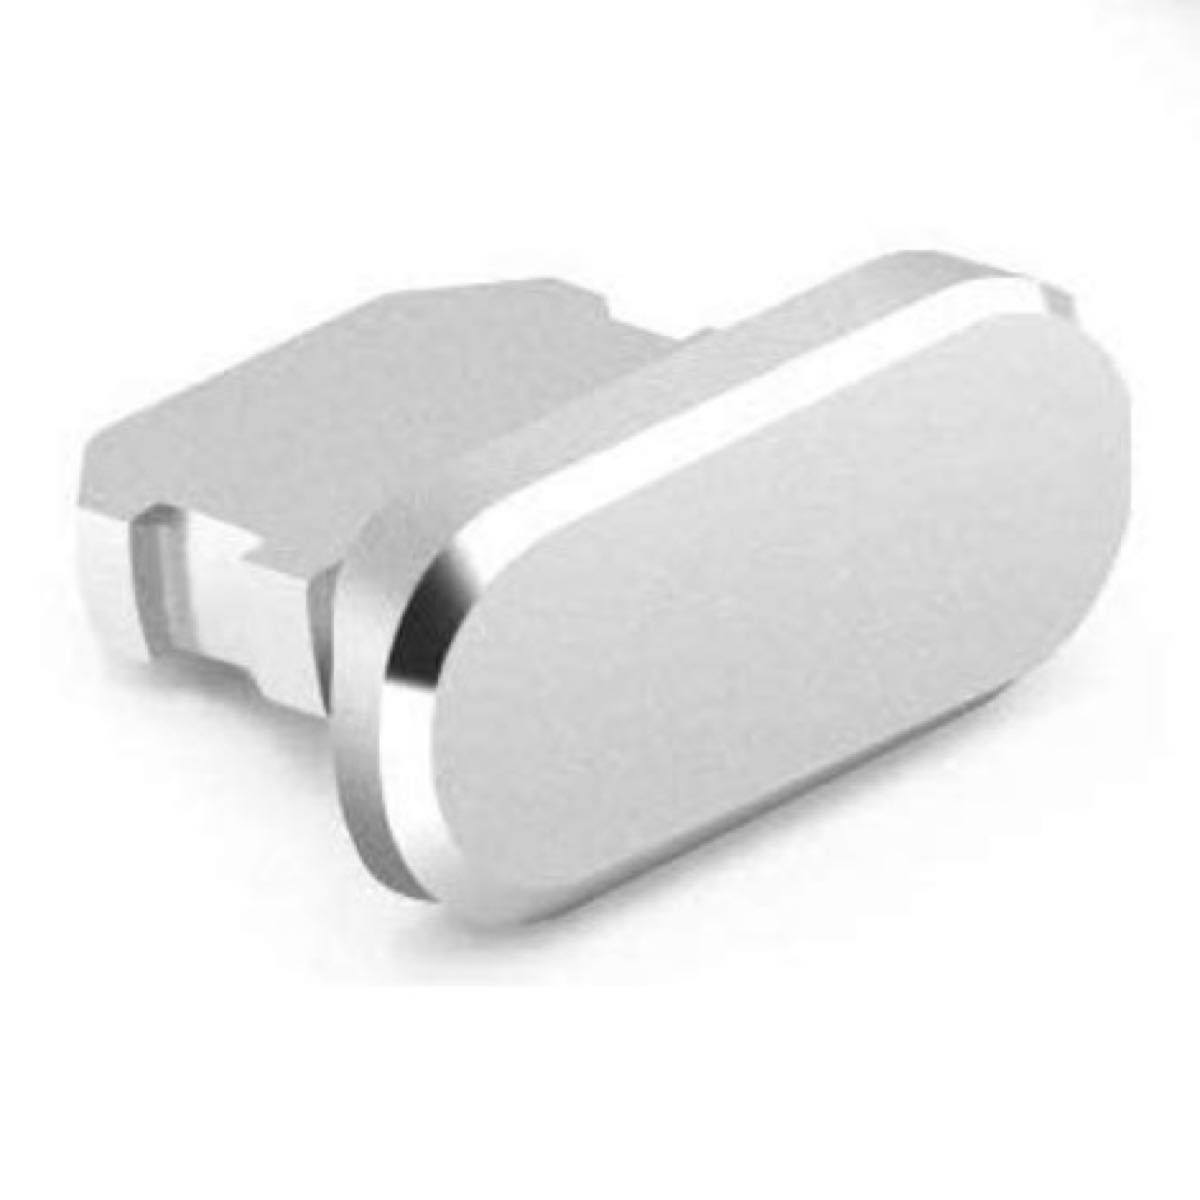 【新品・未使用】iPhone iPad ライトニングキャップ 充電口 保護キャップ シルバー